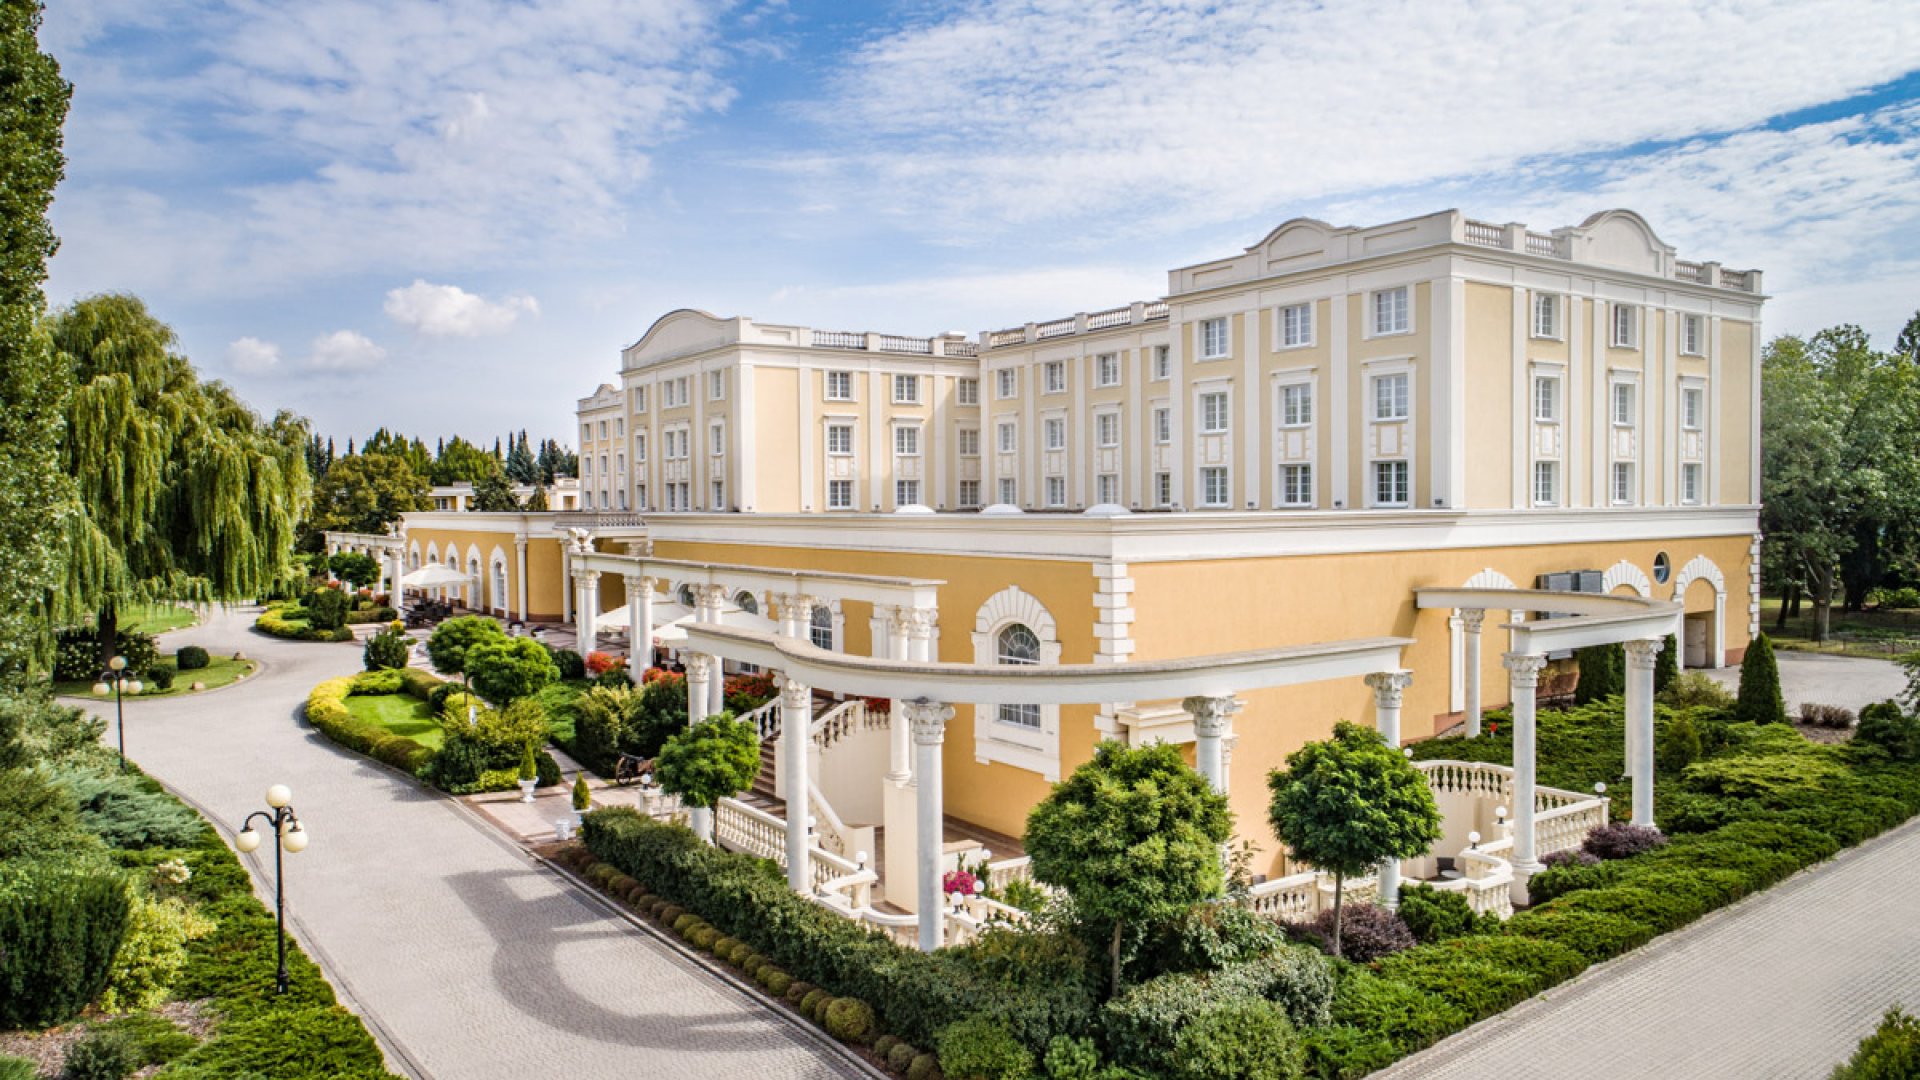 Jak dużo jest hoteli konferencyjnych w okolicach Warszawy w standardzie 4 gwiazdkowym?